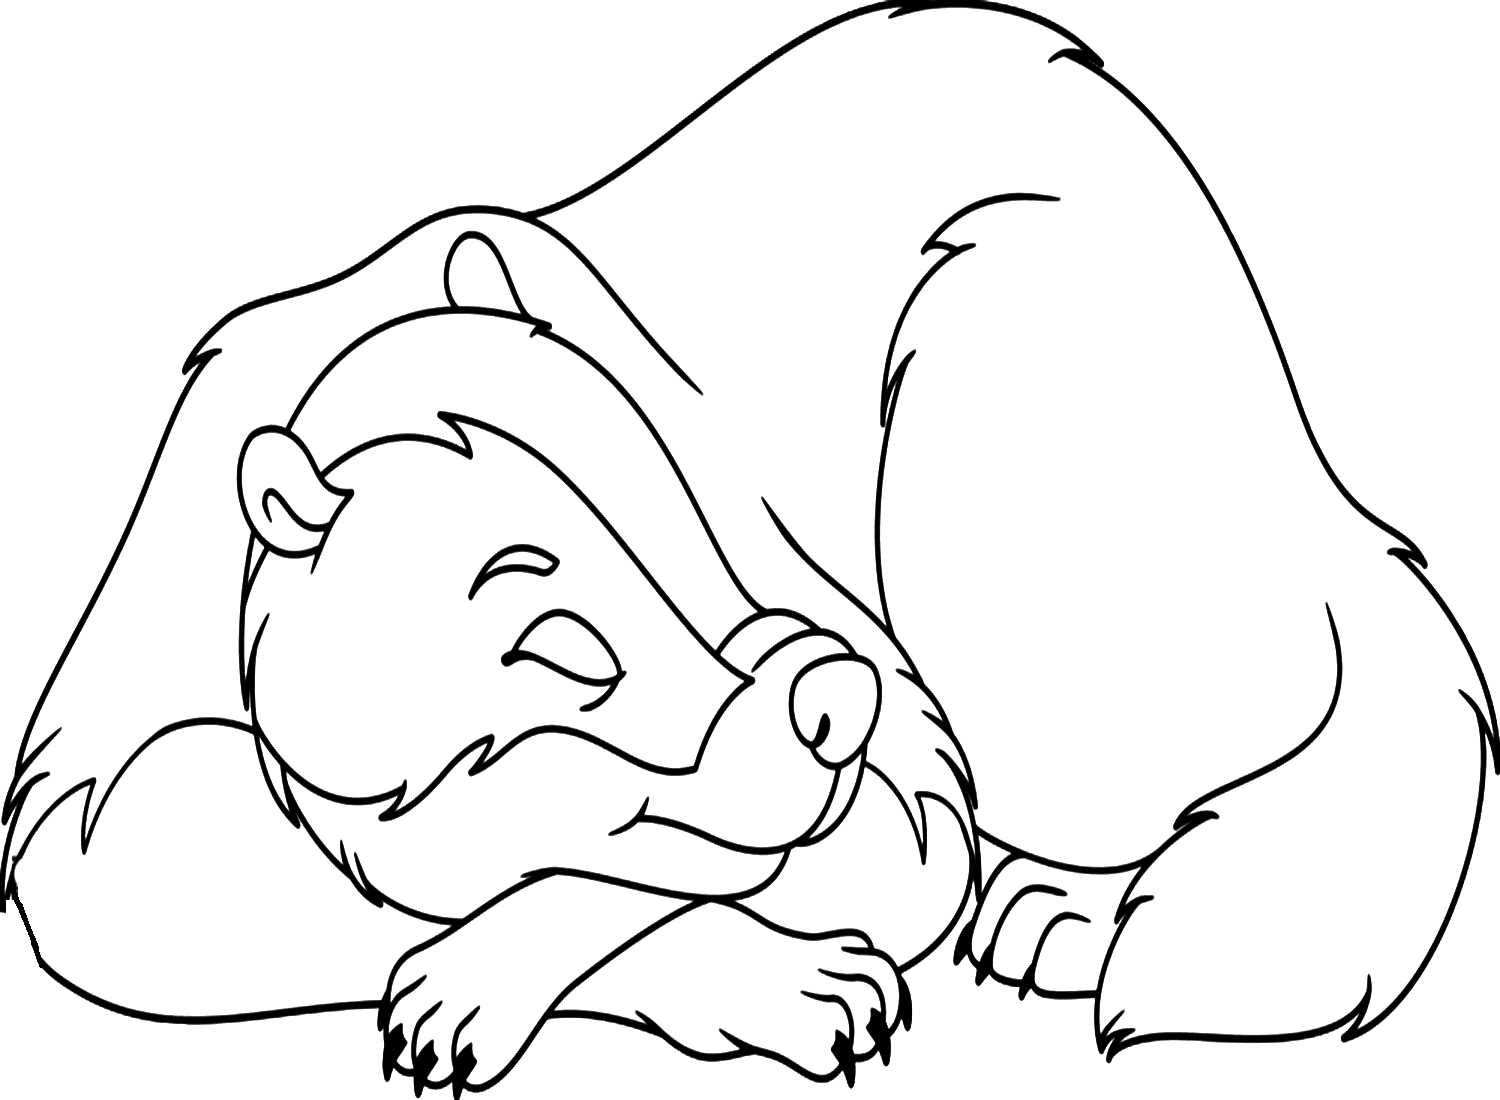 Folha para colorir de texugo dormindo para crianças from Badger